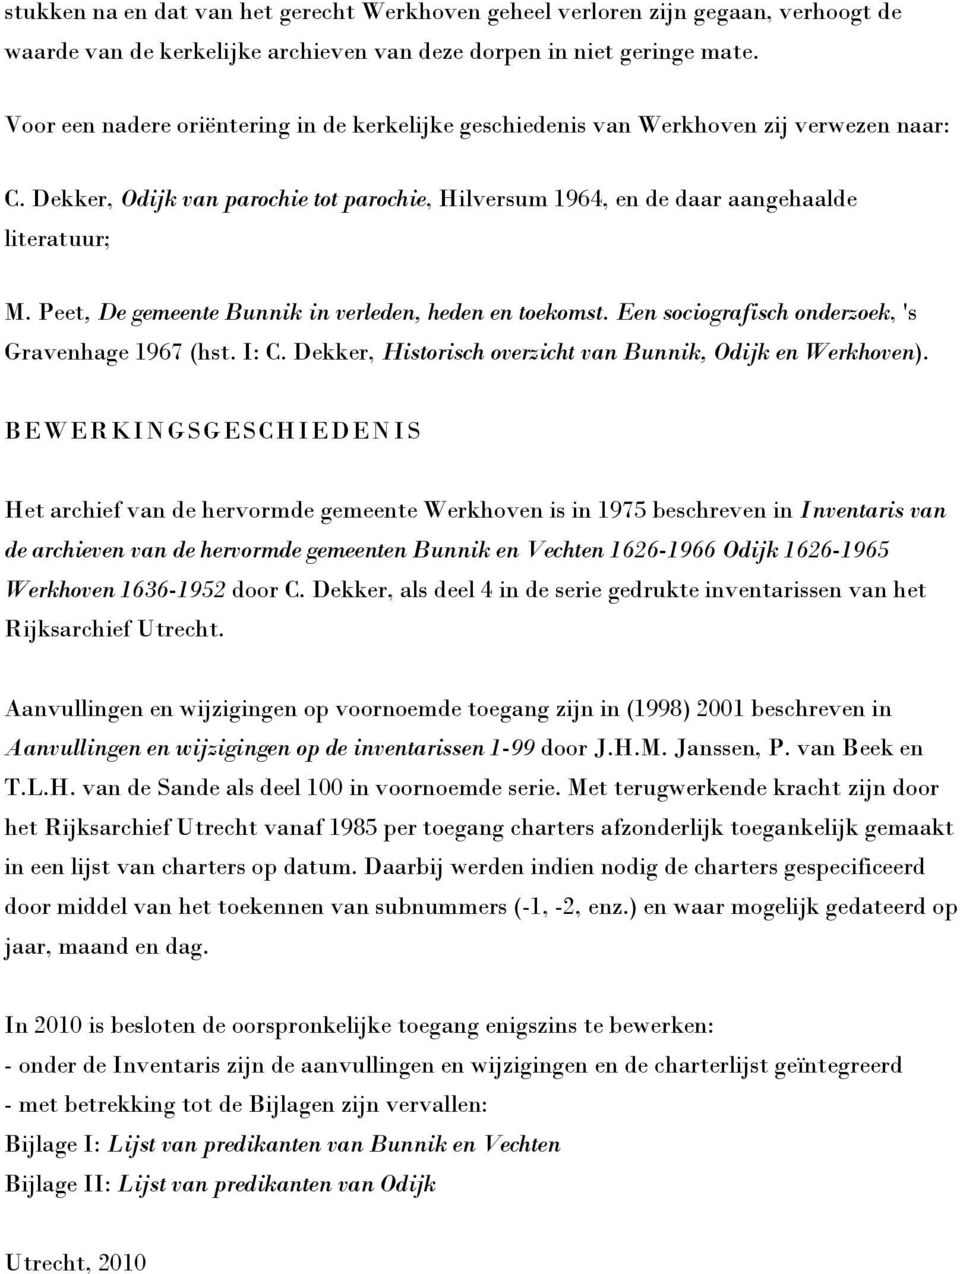 Peet, De gemeente Bunnik in verleden, heden en toekomst. Een sociografisch onderzoek, 's Gravenhage 1967 (hst. I: C. Dekker, Historisch overzicht van Bunnik, Odijk en Werkhoven).